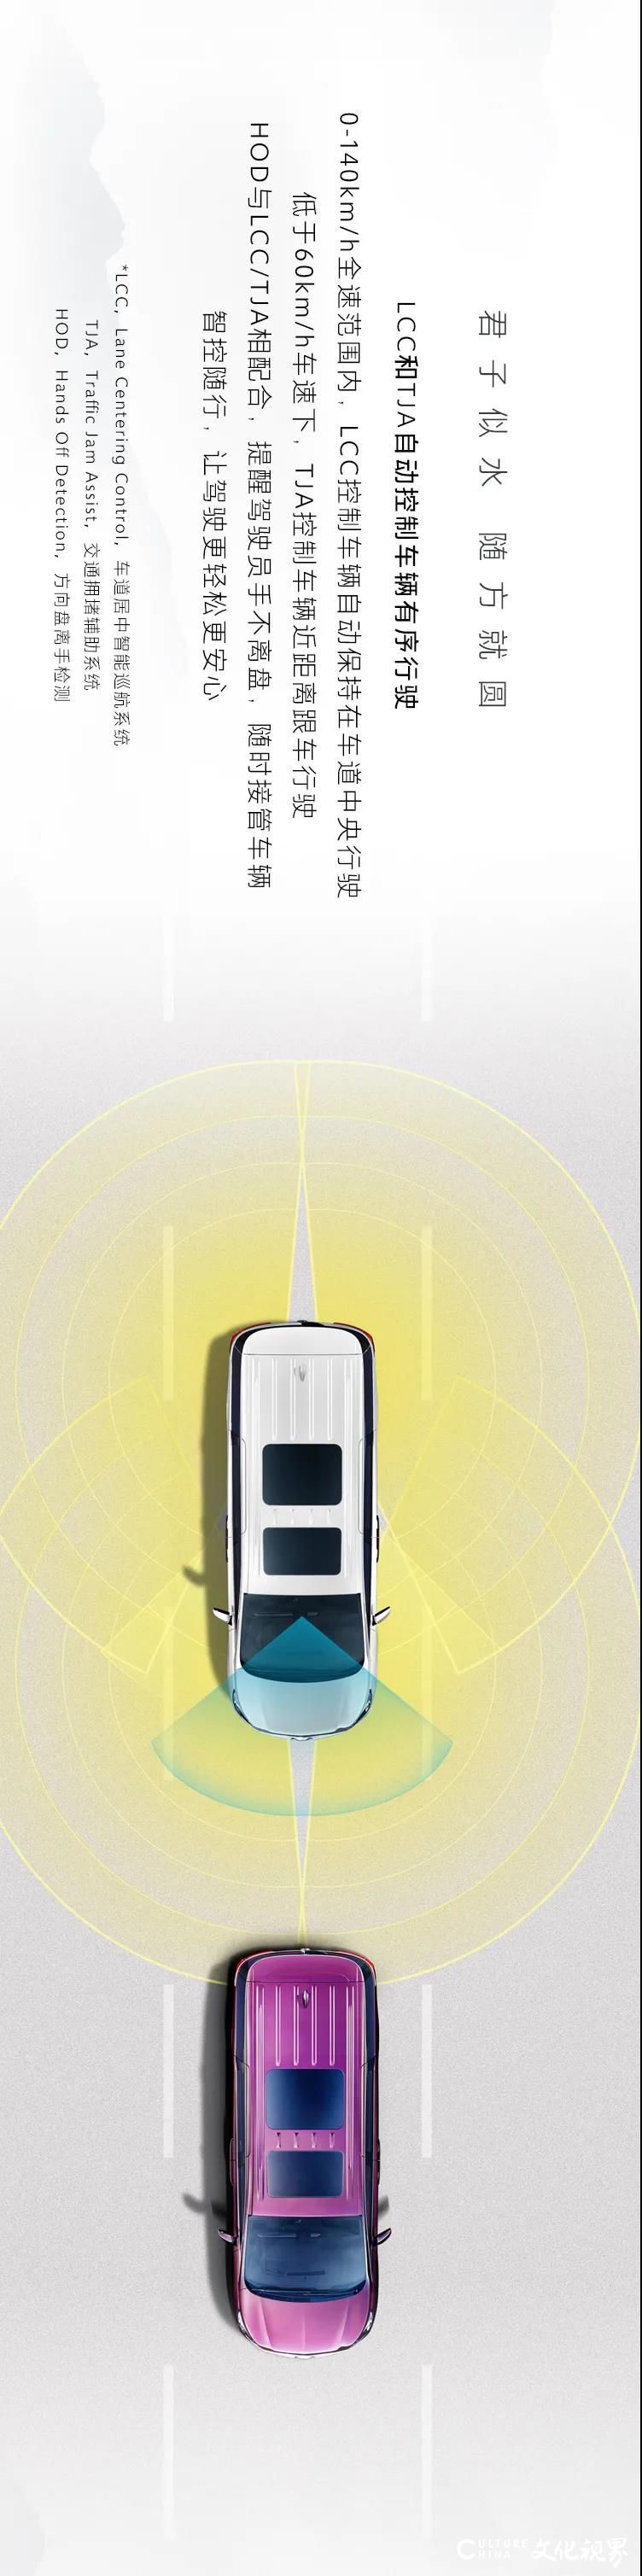 谦让之礼  安享坦途——全新一代别克GL8 ES陆尊搭载高级智能驾驶辅助系统，让驾乘更加轻松自在进退有度